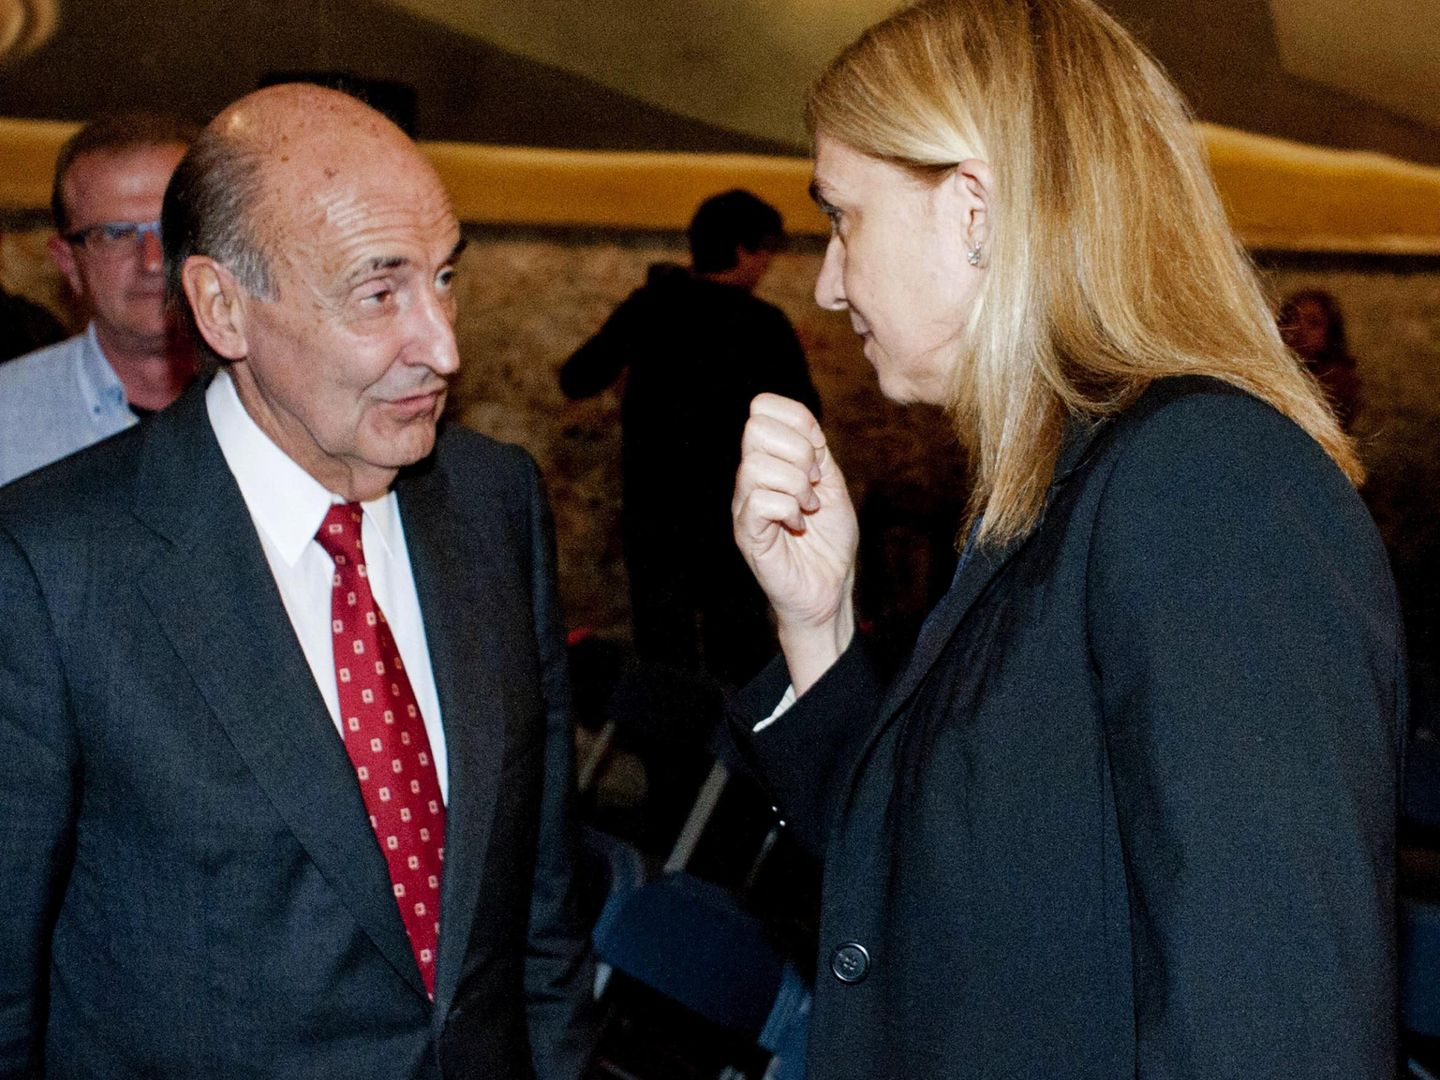 La patrona vitalicia de la Fundación Gala-Dalí, la infanta Cristina, conversa con su abogado y también patrono, Miquel Roca Junyent, en una imagen de archivo. (EFE)